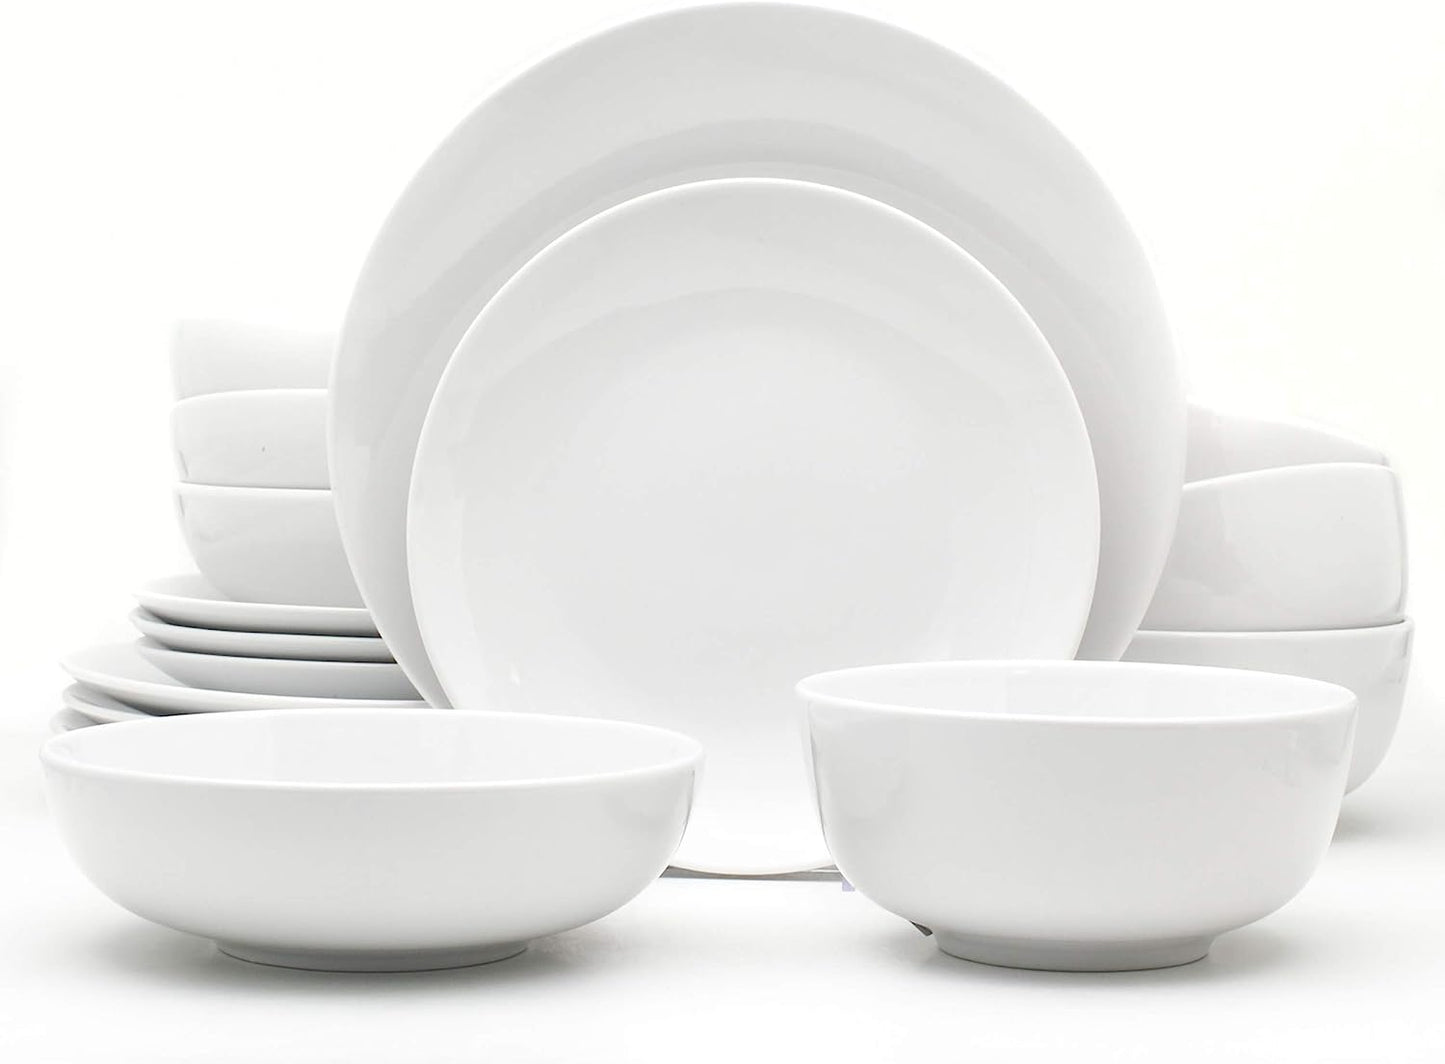 Classic White Porcelain Dinnerware Set for 4